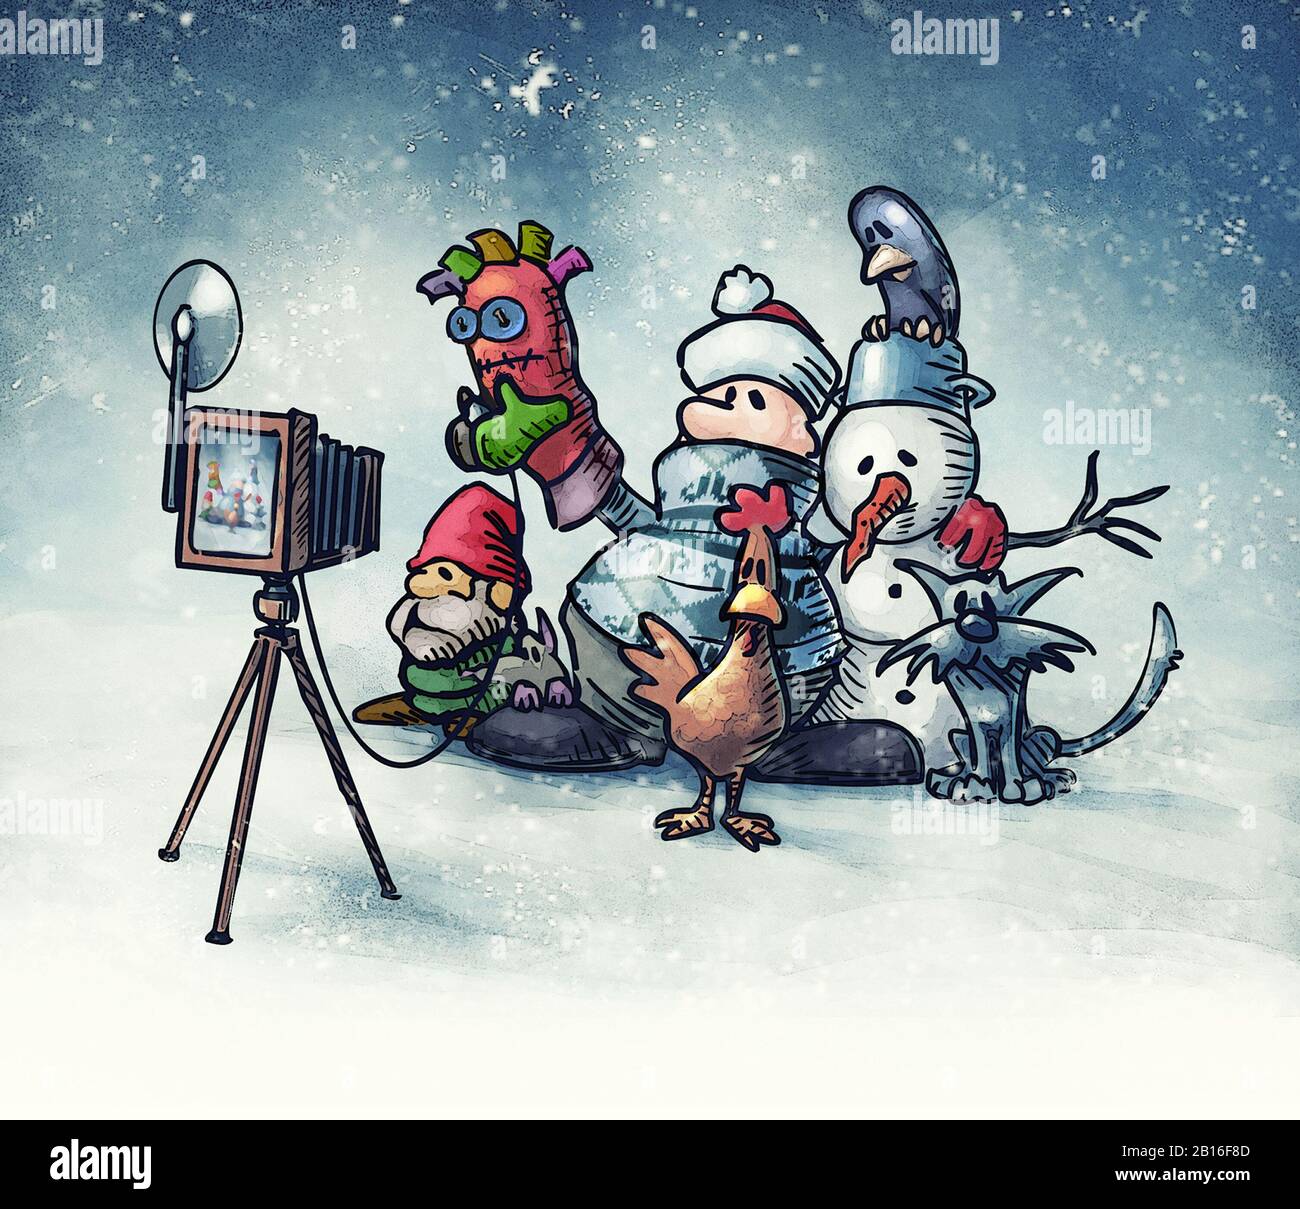 hombre solitario con muñeco de nieve, enano de yeso y animales toma fotos de sí mismo para la foto de grupo "con amigos" - ilustración de dibujos animados Foto de stock